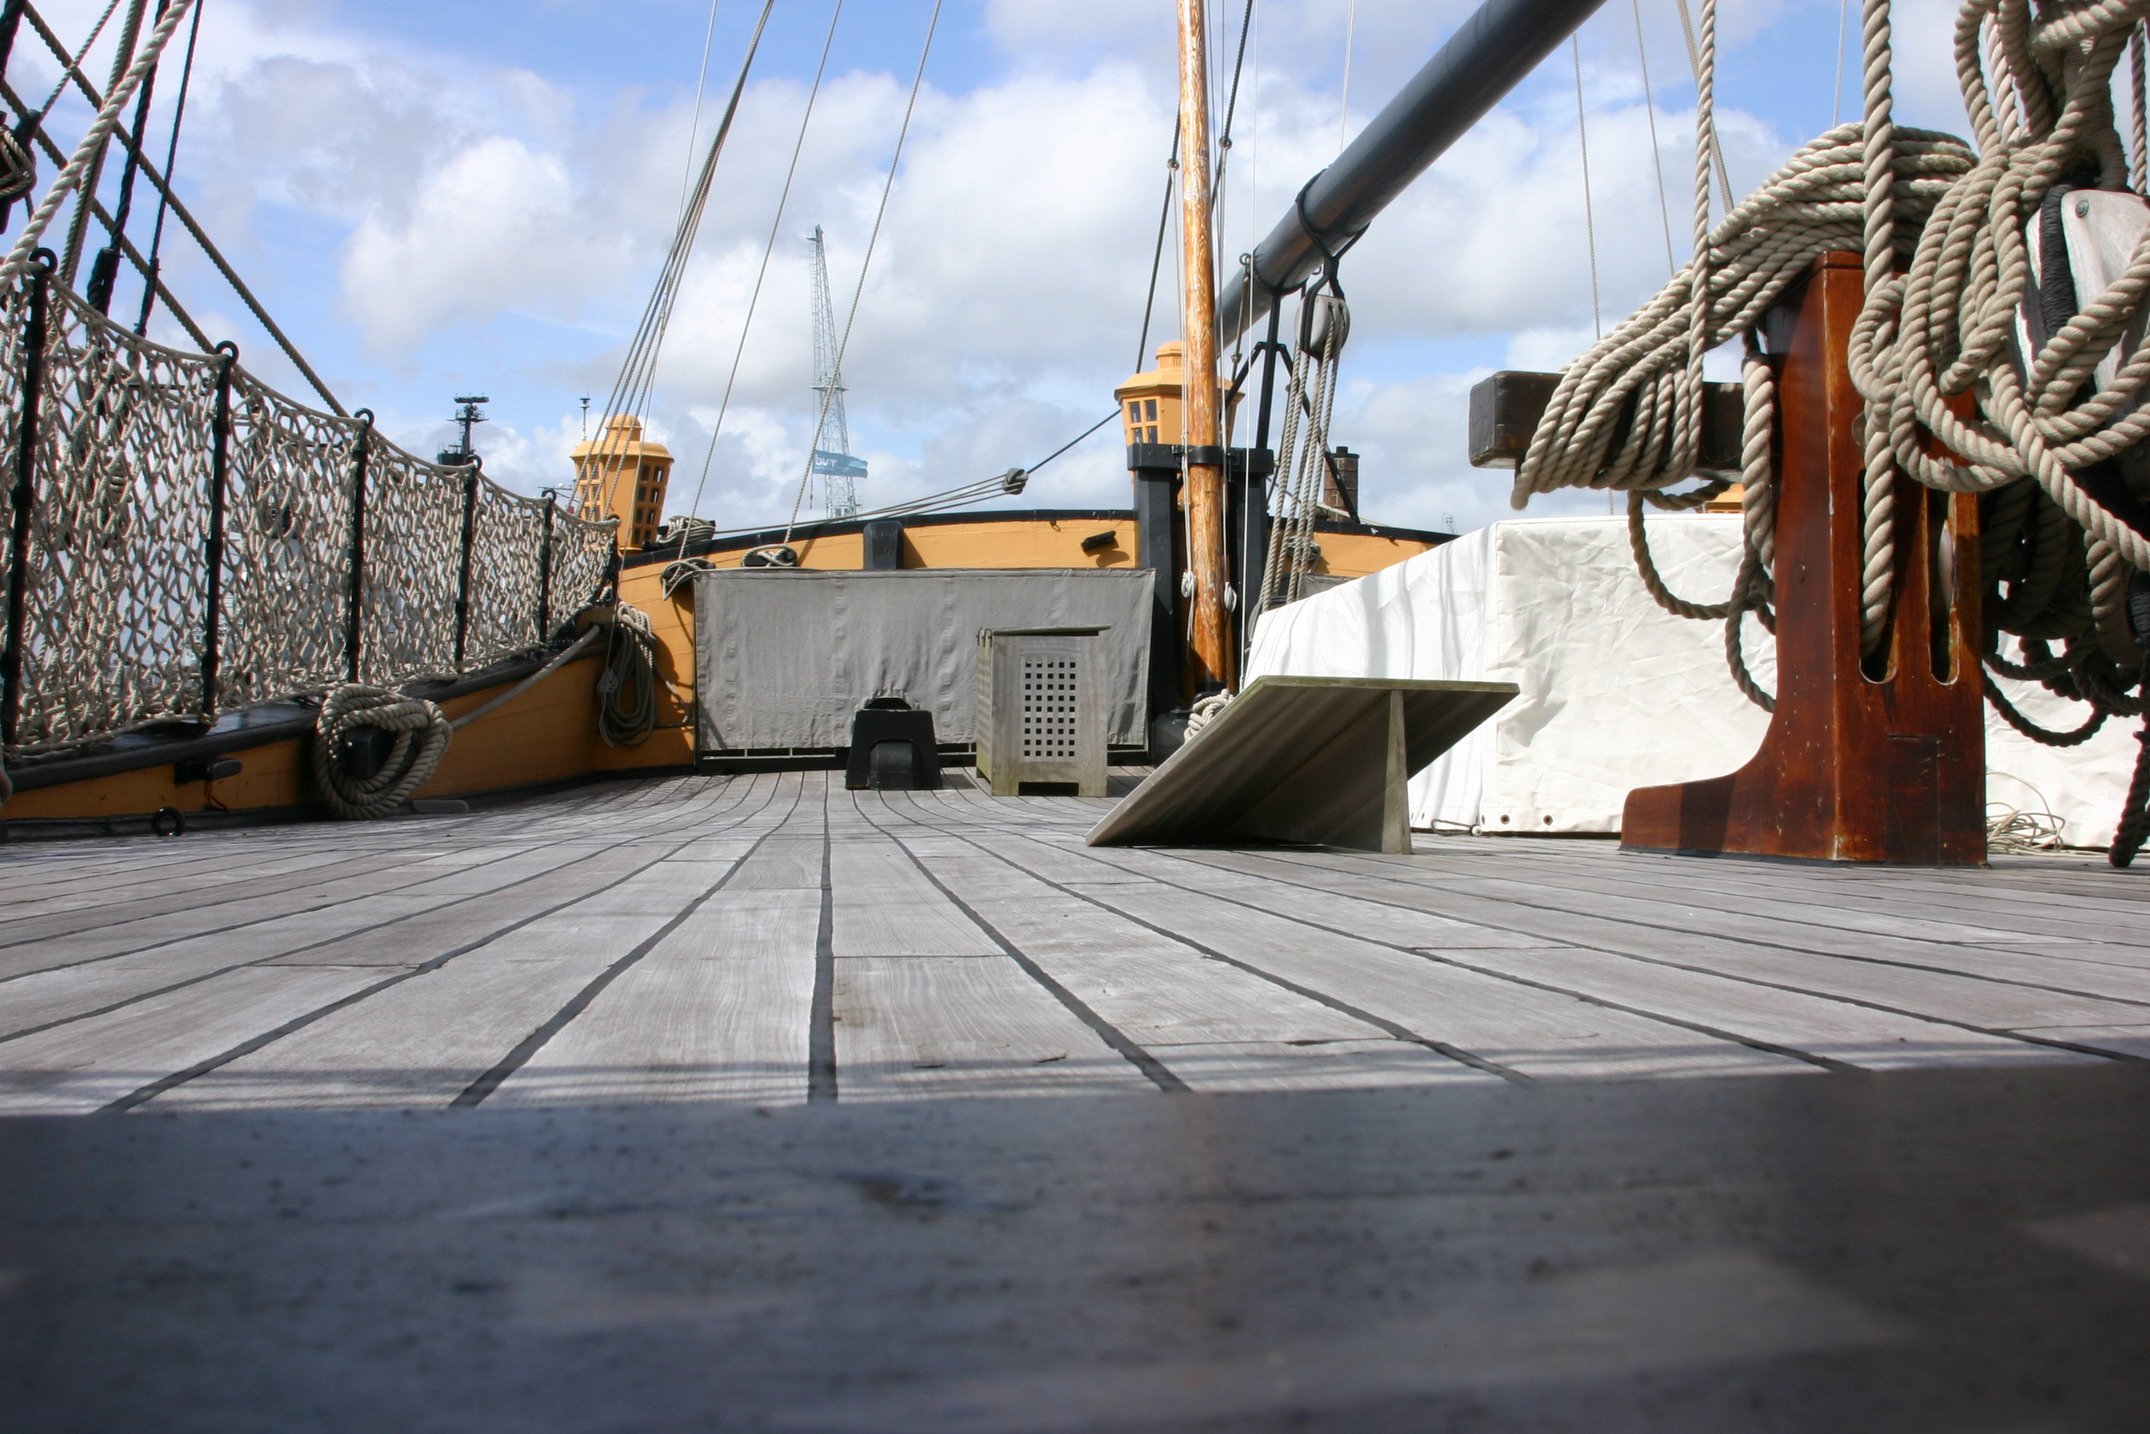 Как называется палуба судна. Виктори корабль музей. HMS Victory палубы. Палуба корабля Виктори. Гандек палуба.